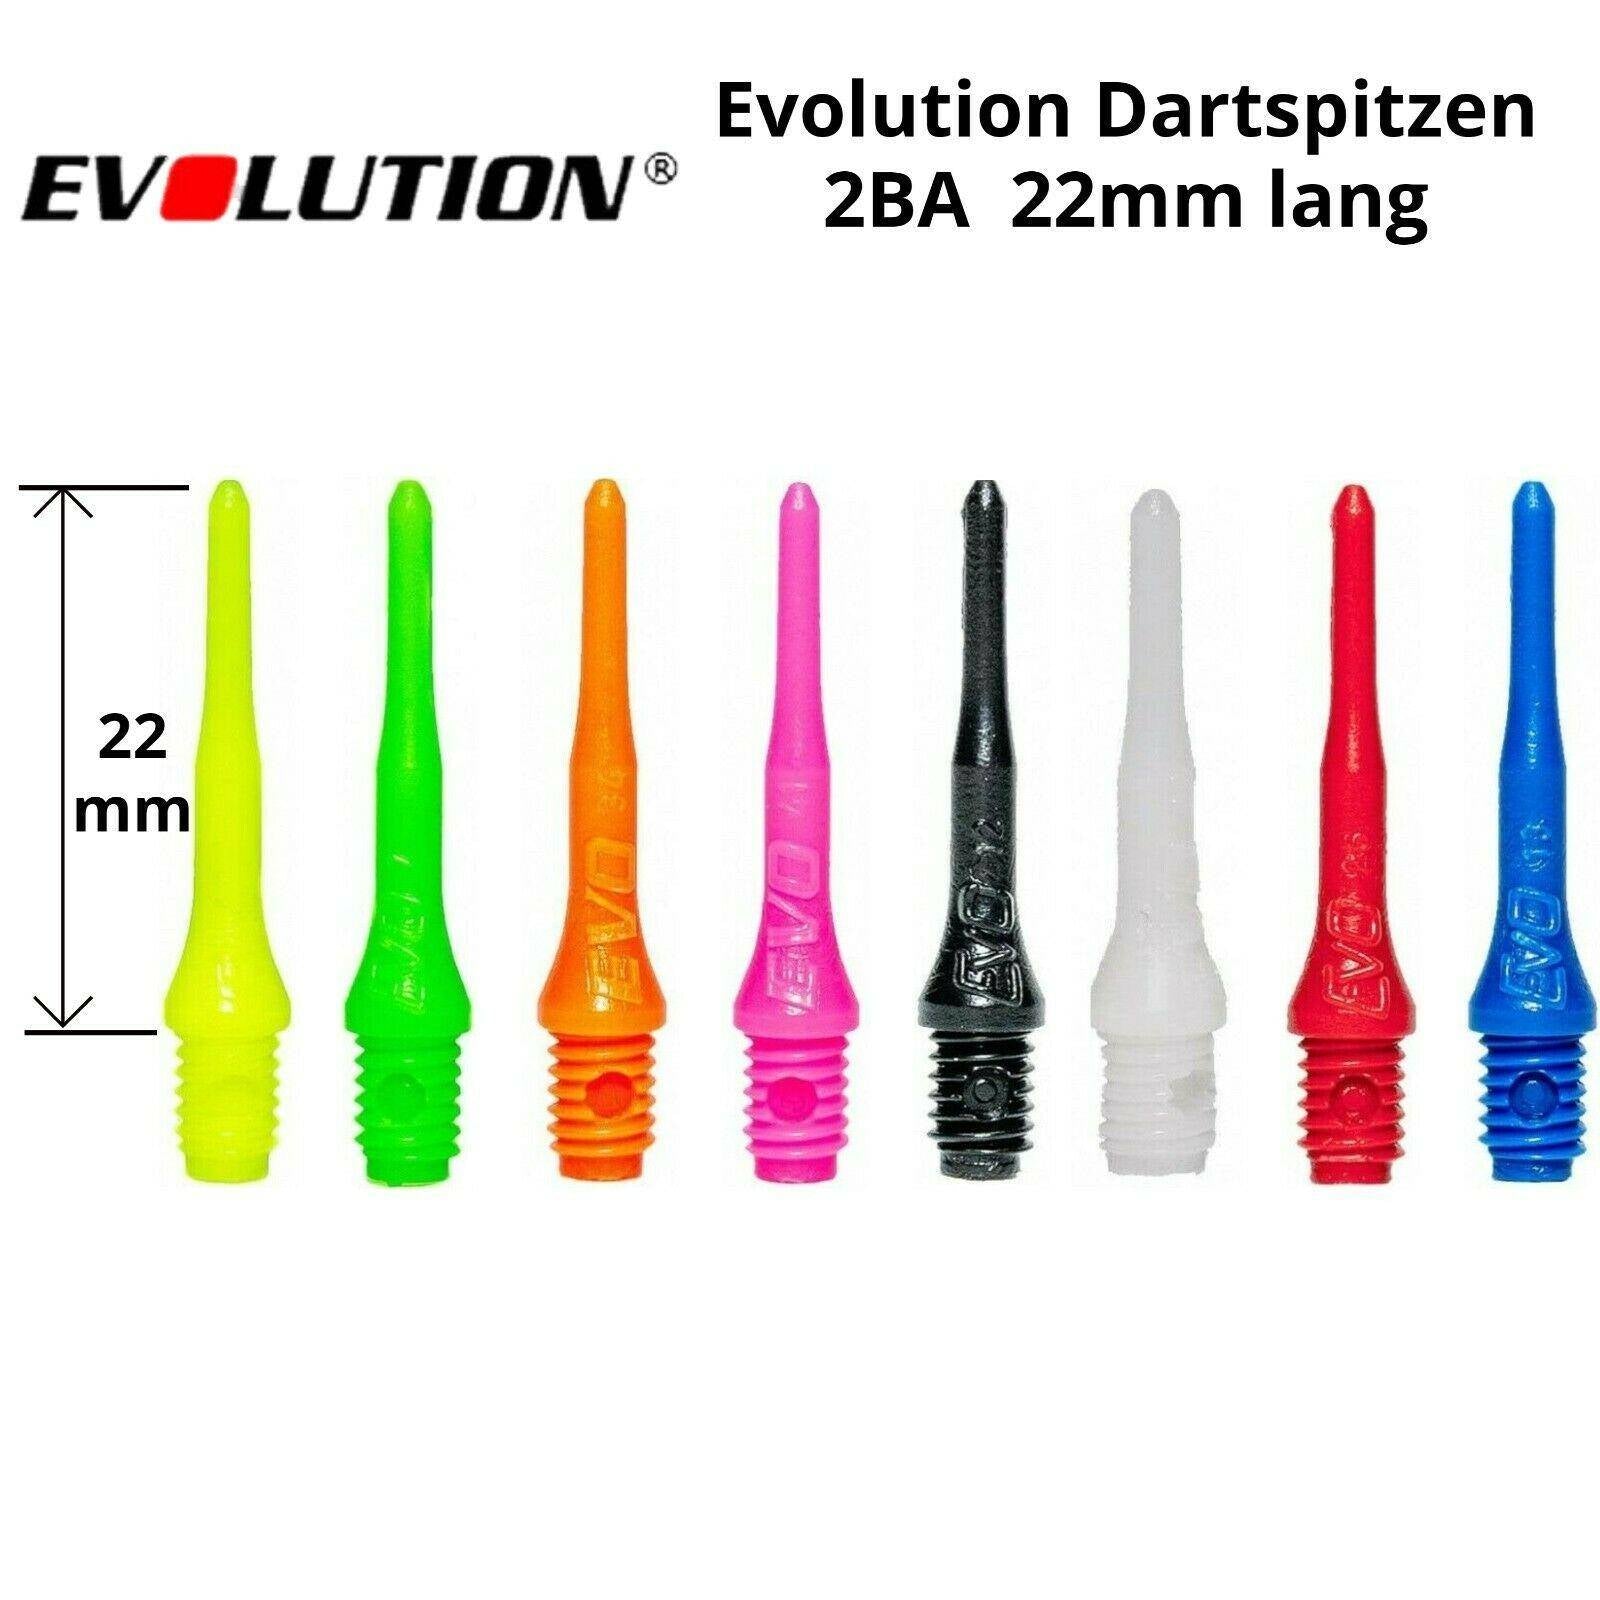 Evolution EVO Dartspitzen 2BA Soft Tip Points - 50 Stück